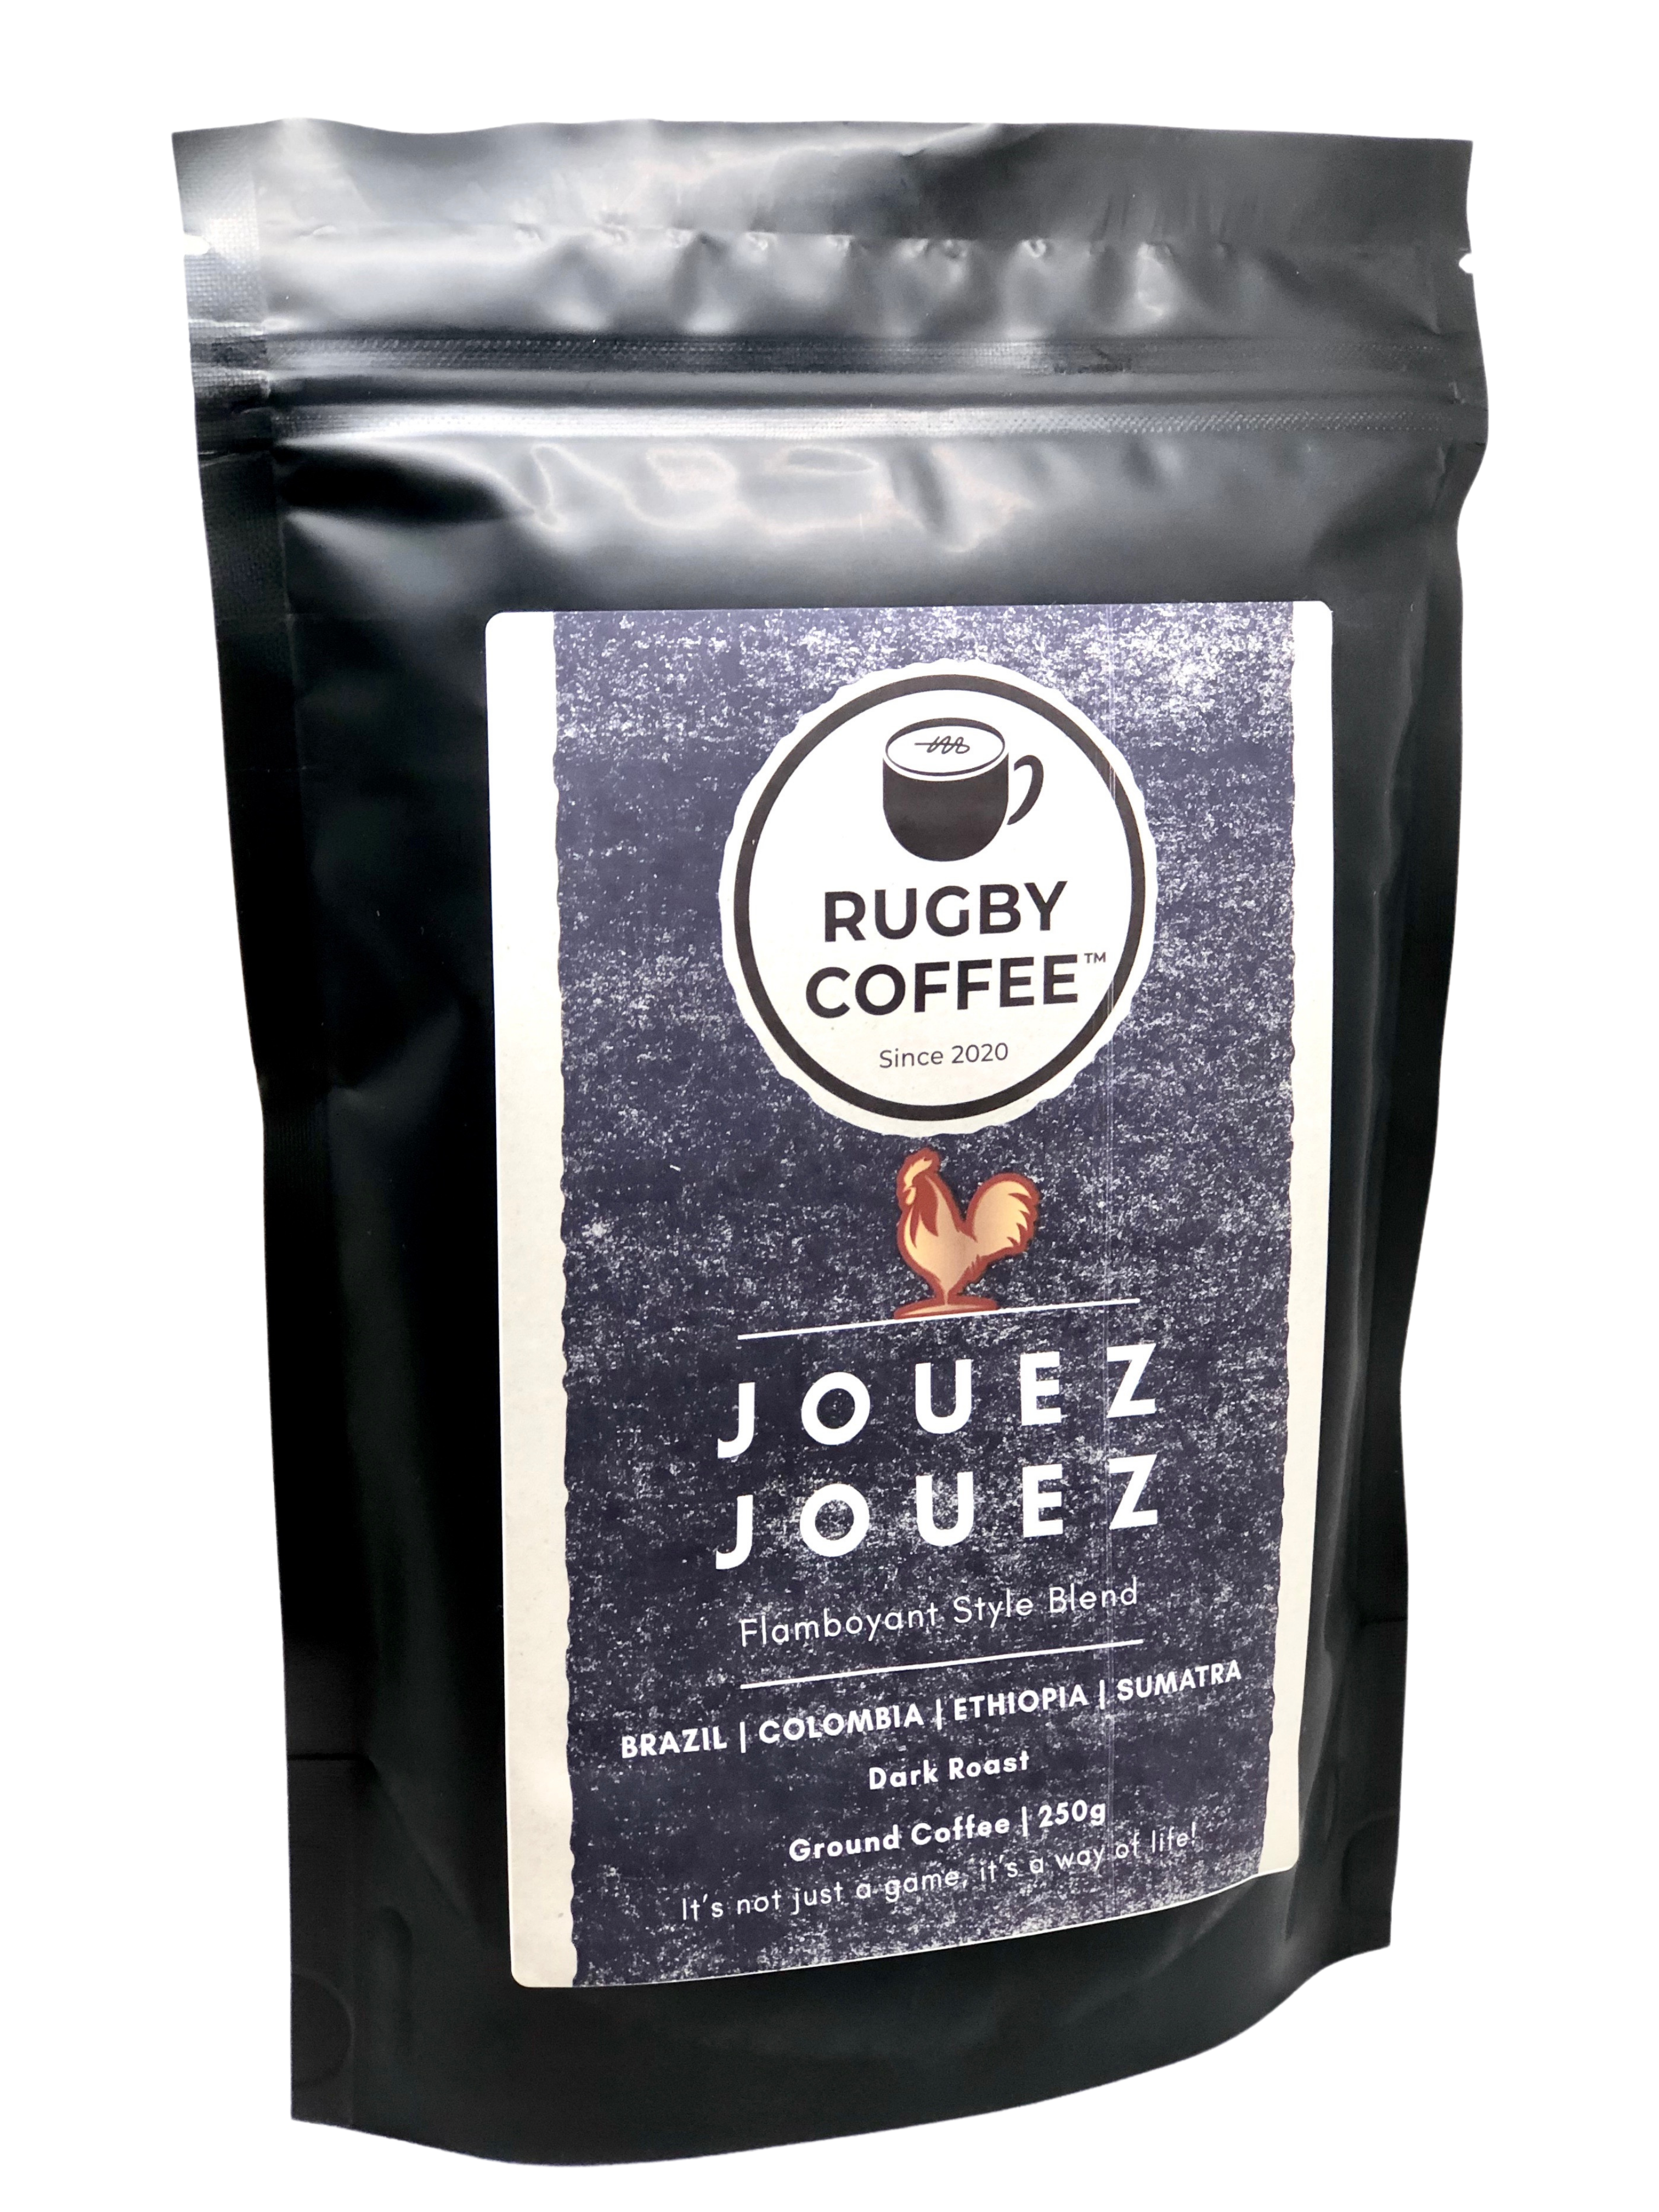 JOUEZ JOUEZ 250g Ground Coffee